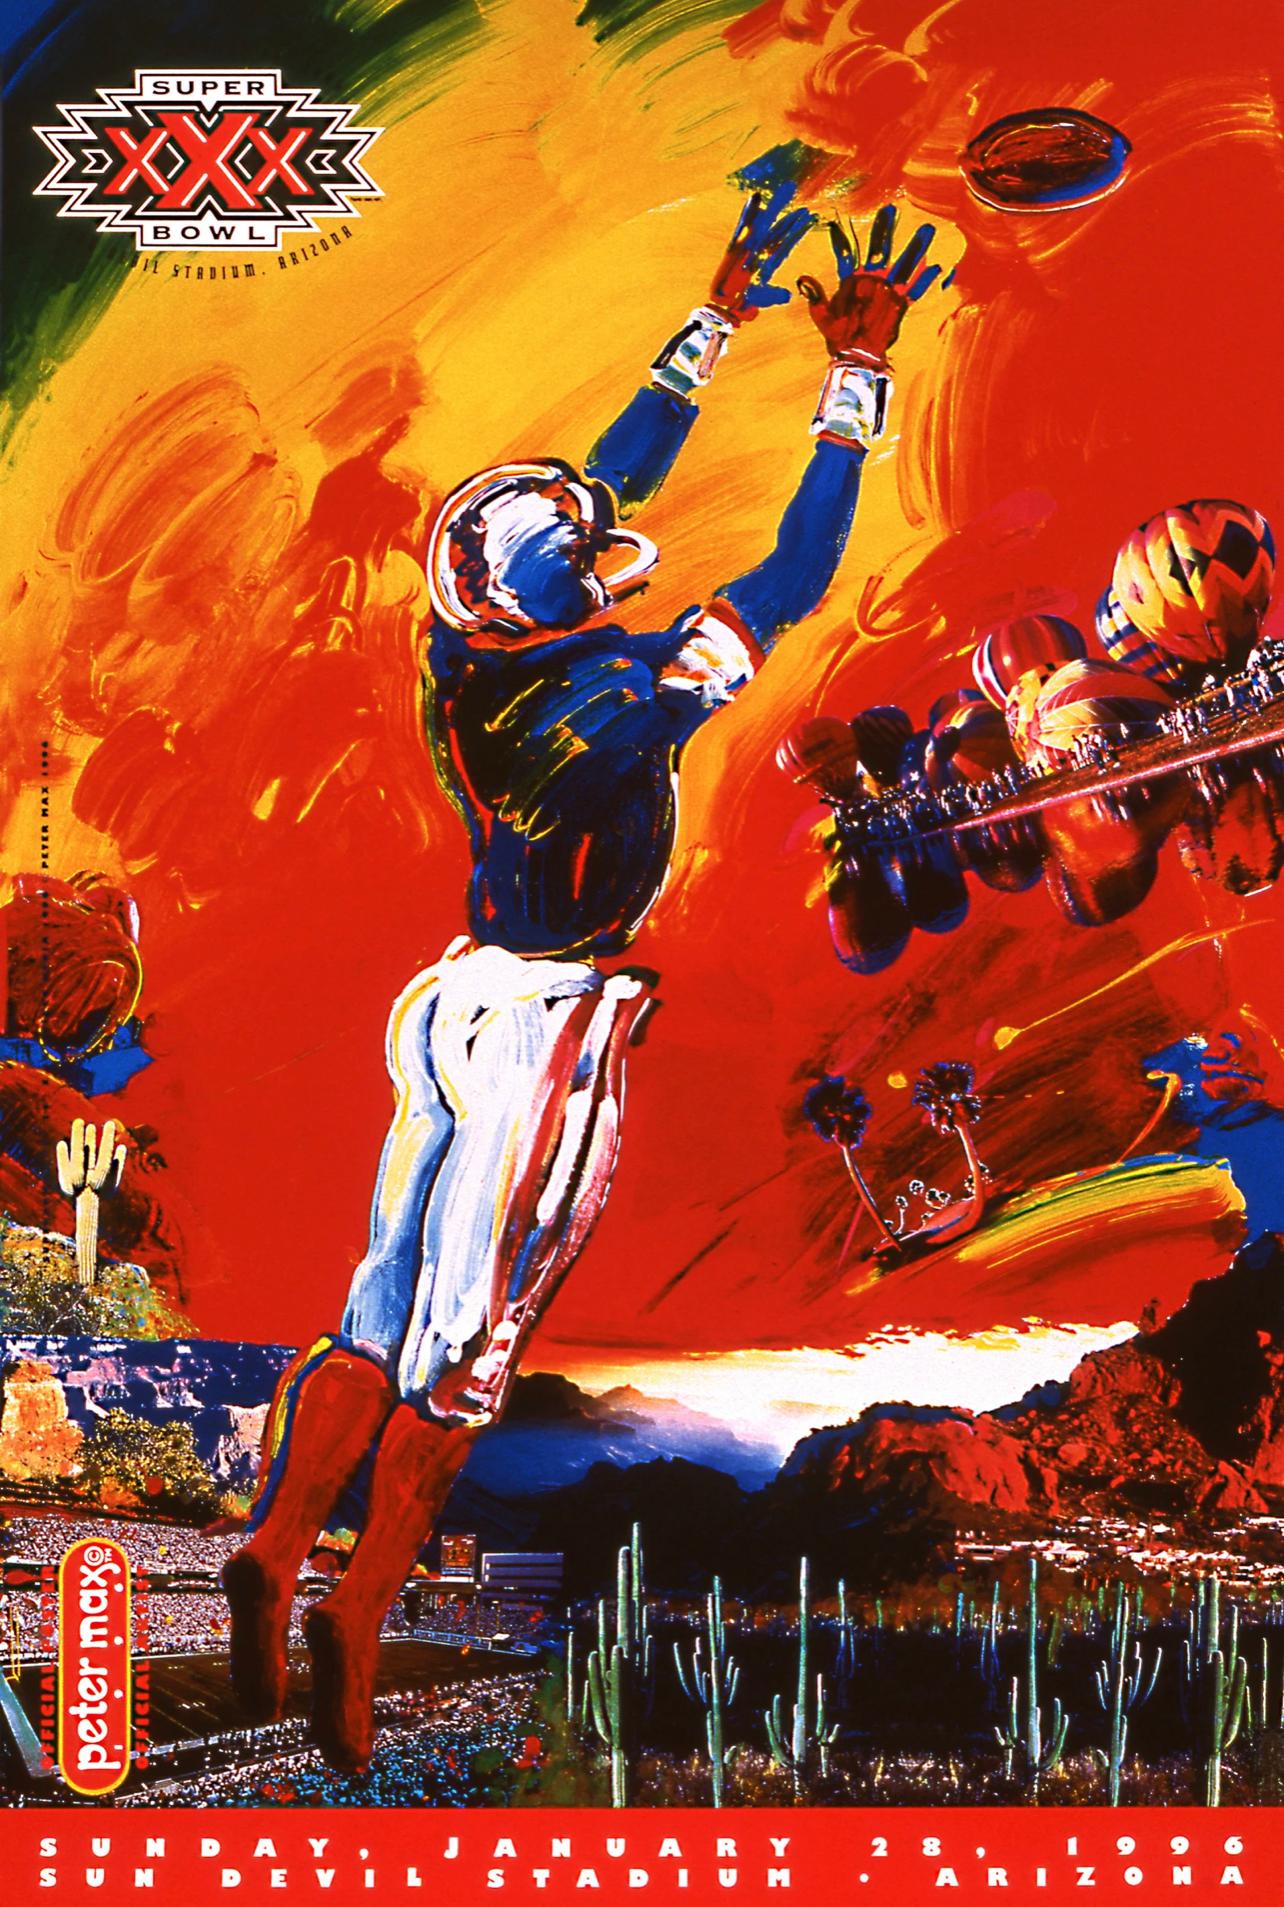 Peter Max Landscape Print - Super Bowl XXX - THE PLAYER